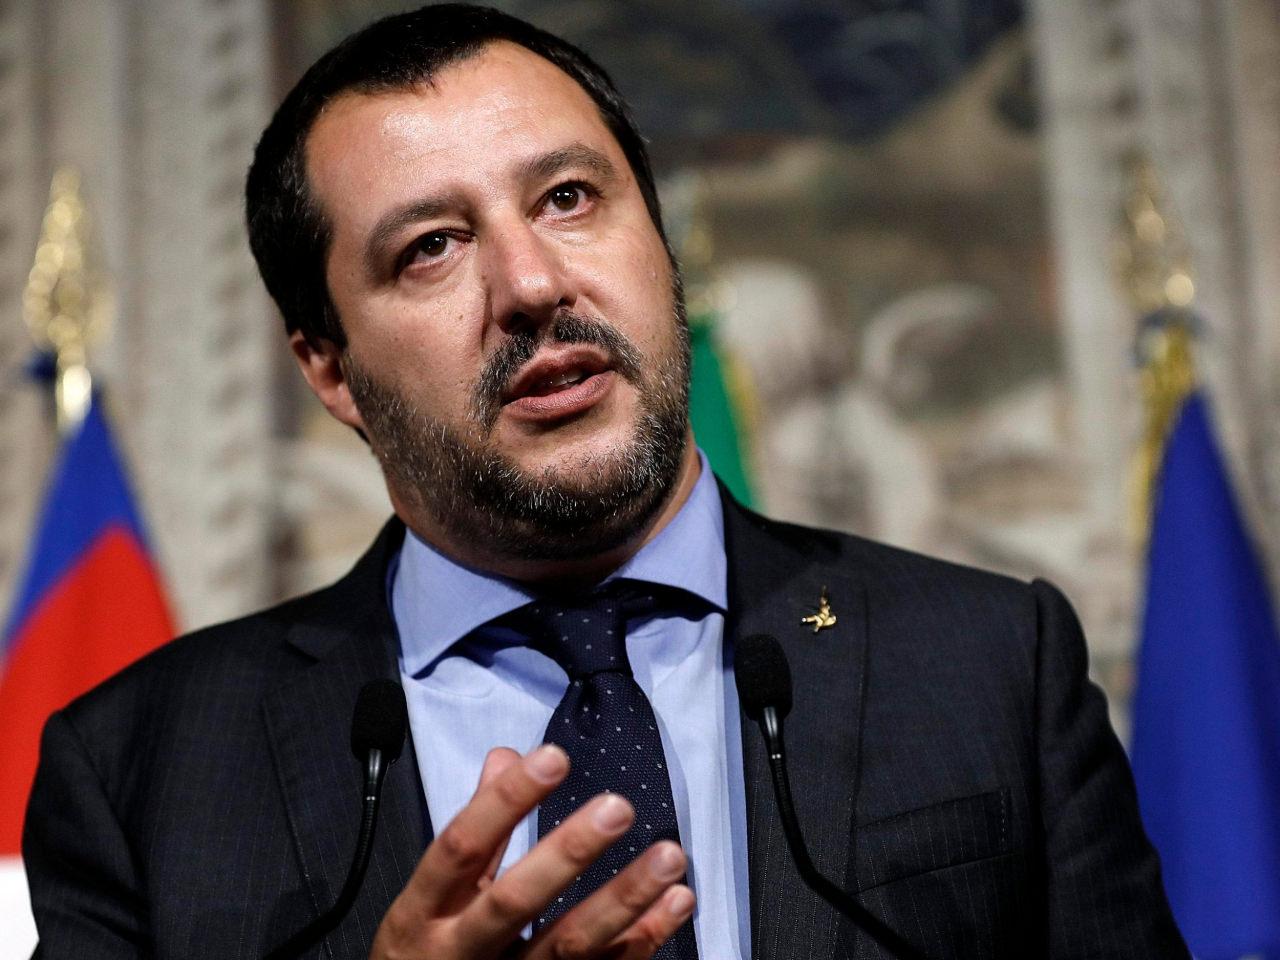 İsrail sessiz: Erdoğan'ın Hamas açıklamasına ilk tepki İtalya'dan